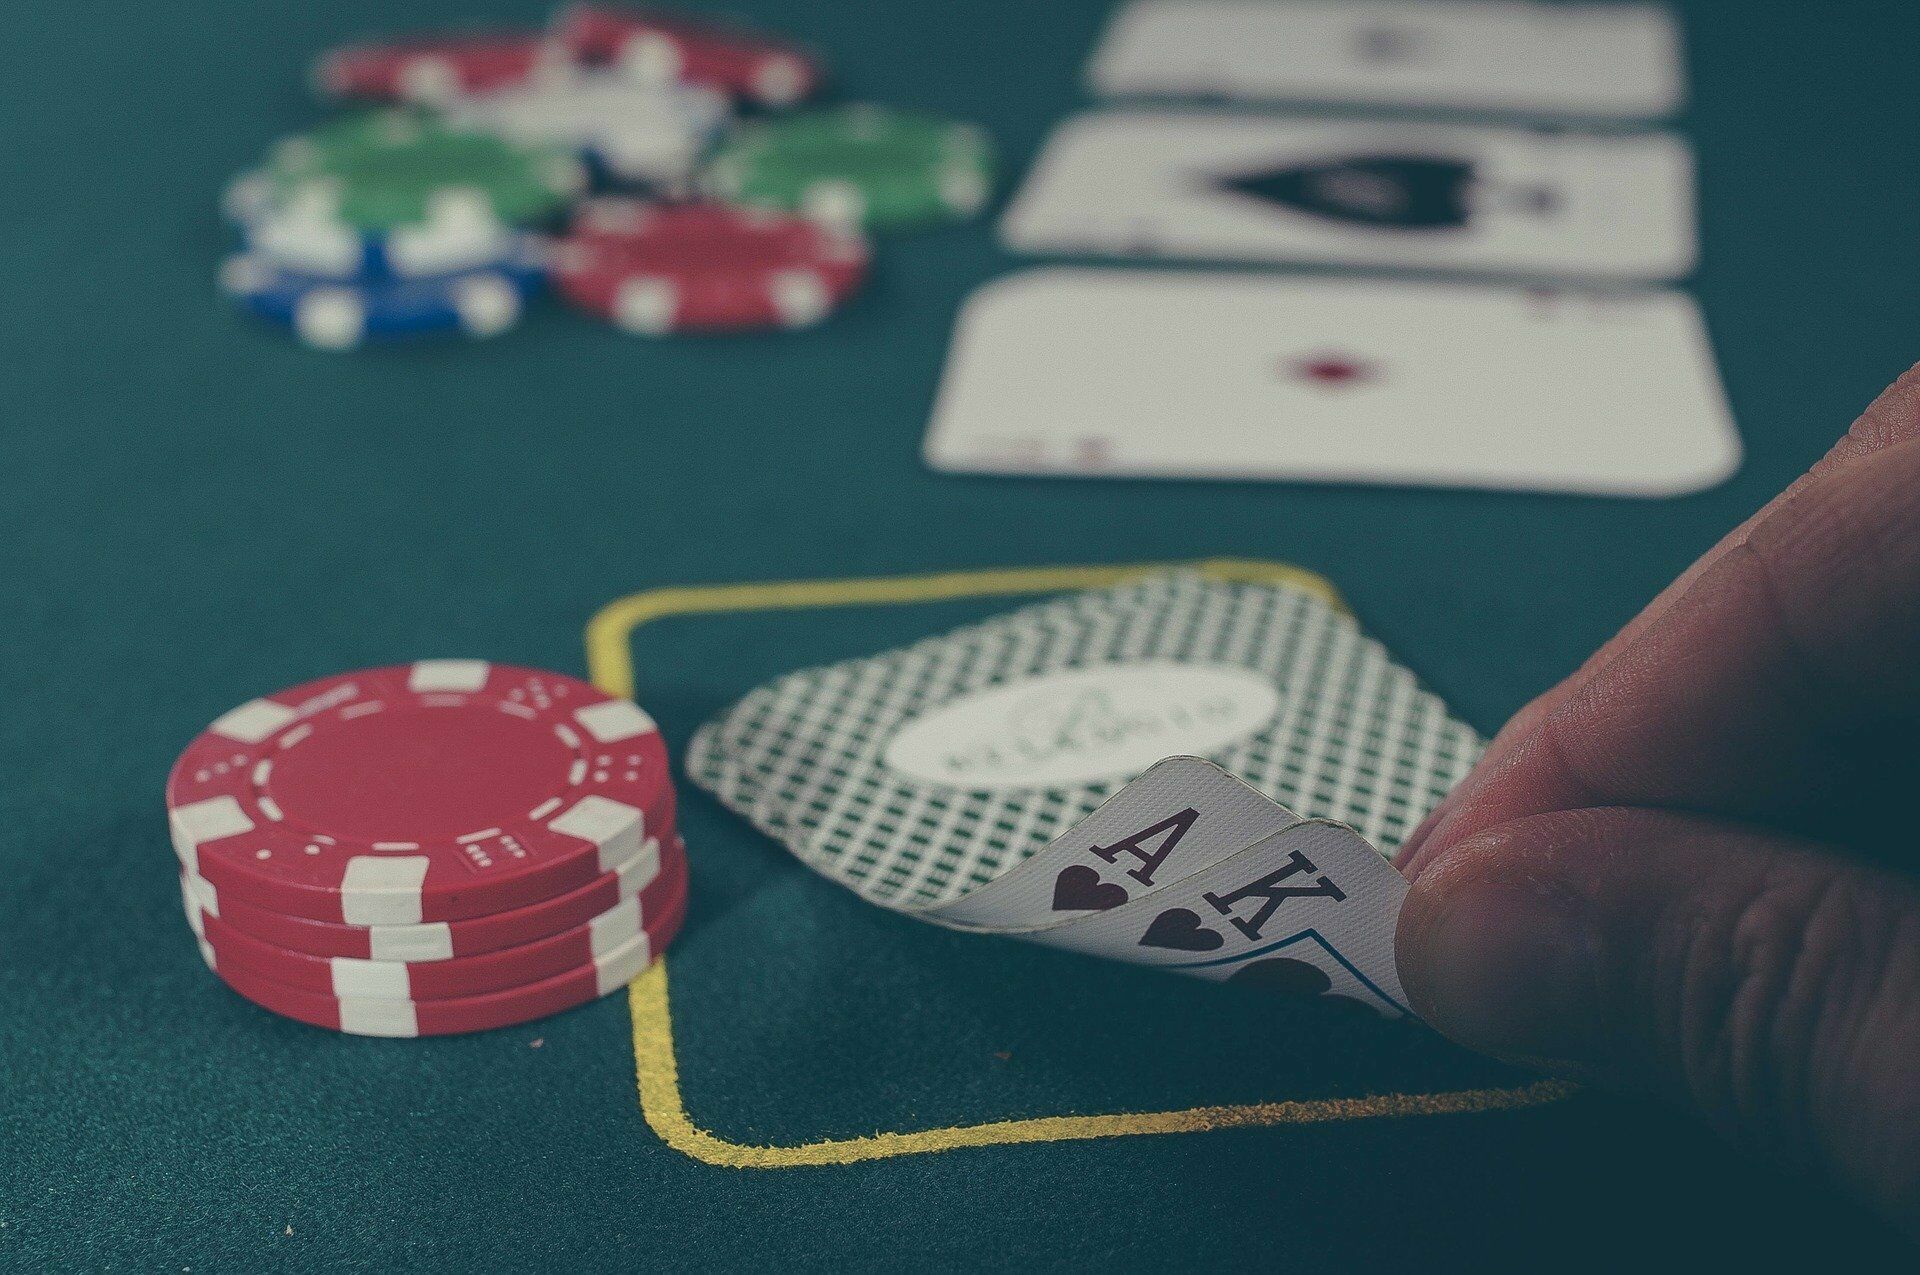 Сыграем? Питерский вуз организовал онлайн-обучение на покерской платформе